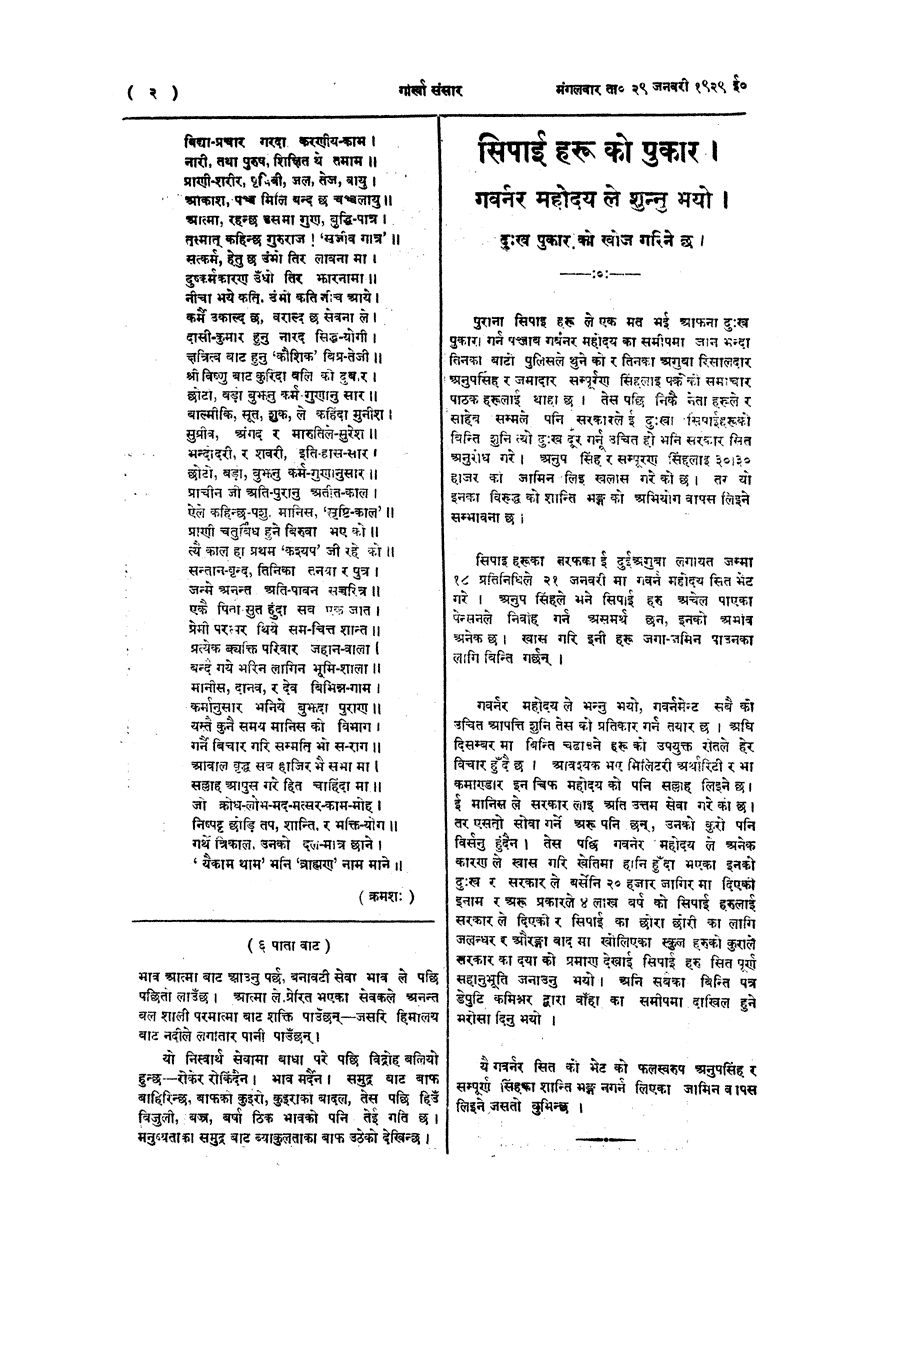 Gorkha Sansar, 29 Jan 1929, page 2